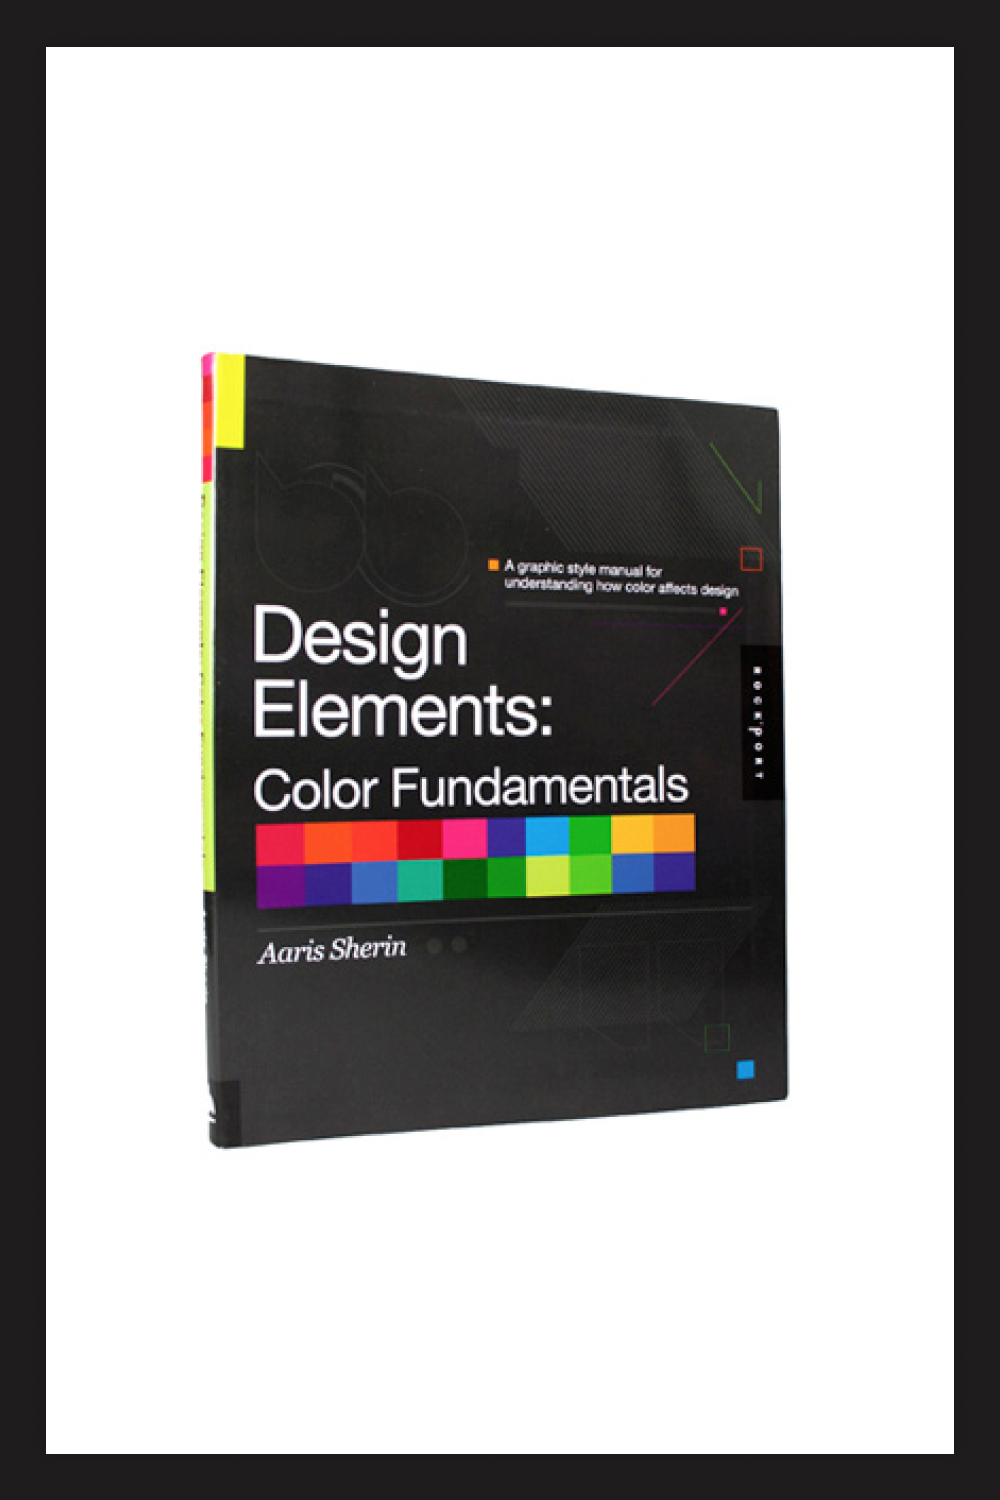 The book Design Elements, Color Fundamentals.